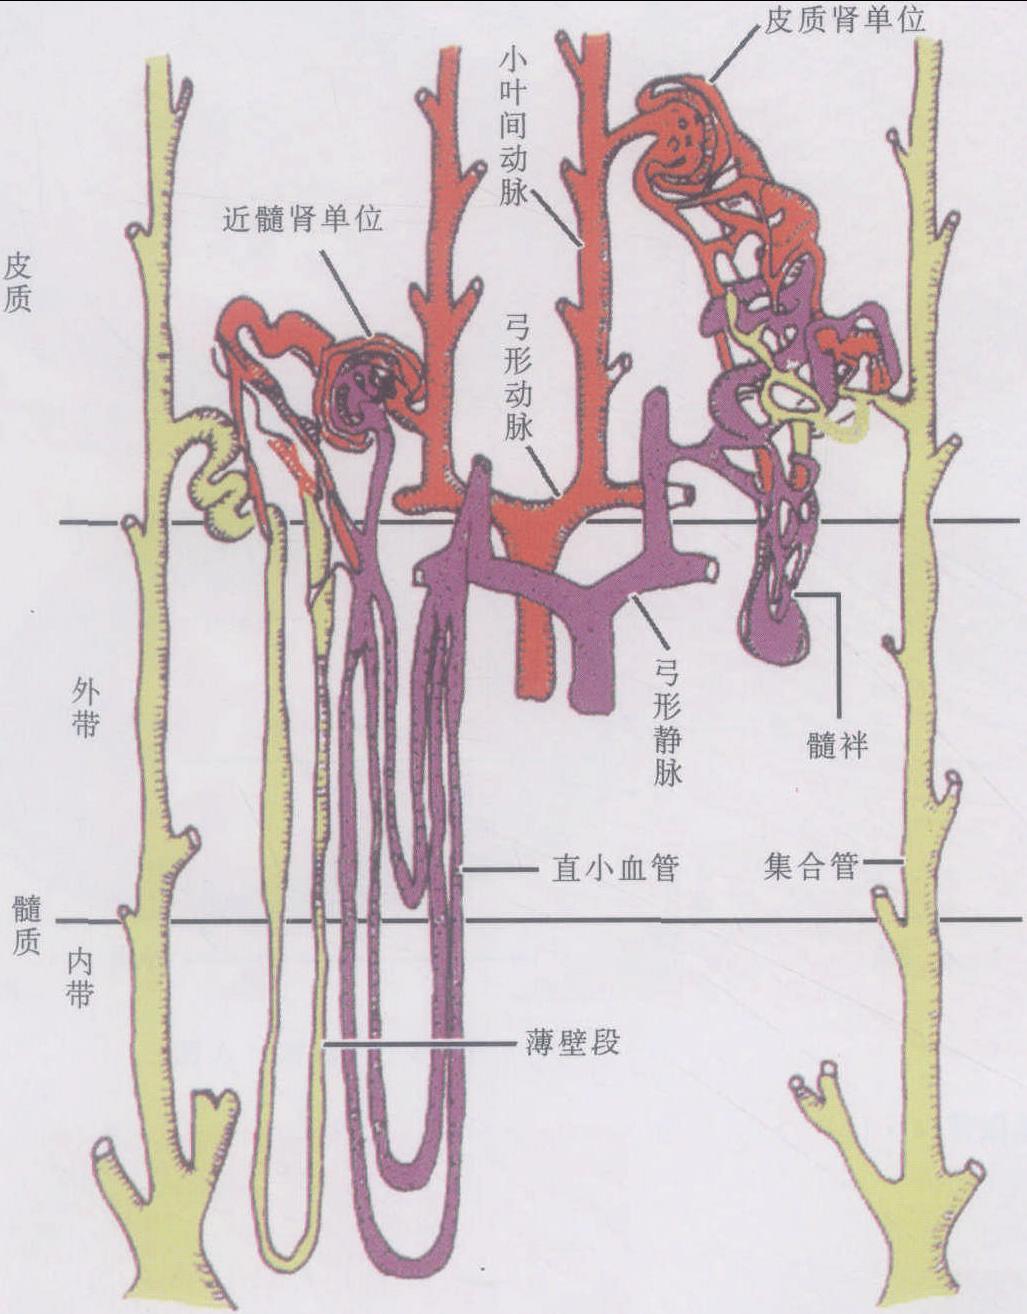 图2-3-24 肾单位和肾血管示意图